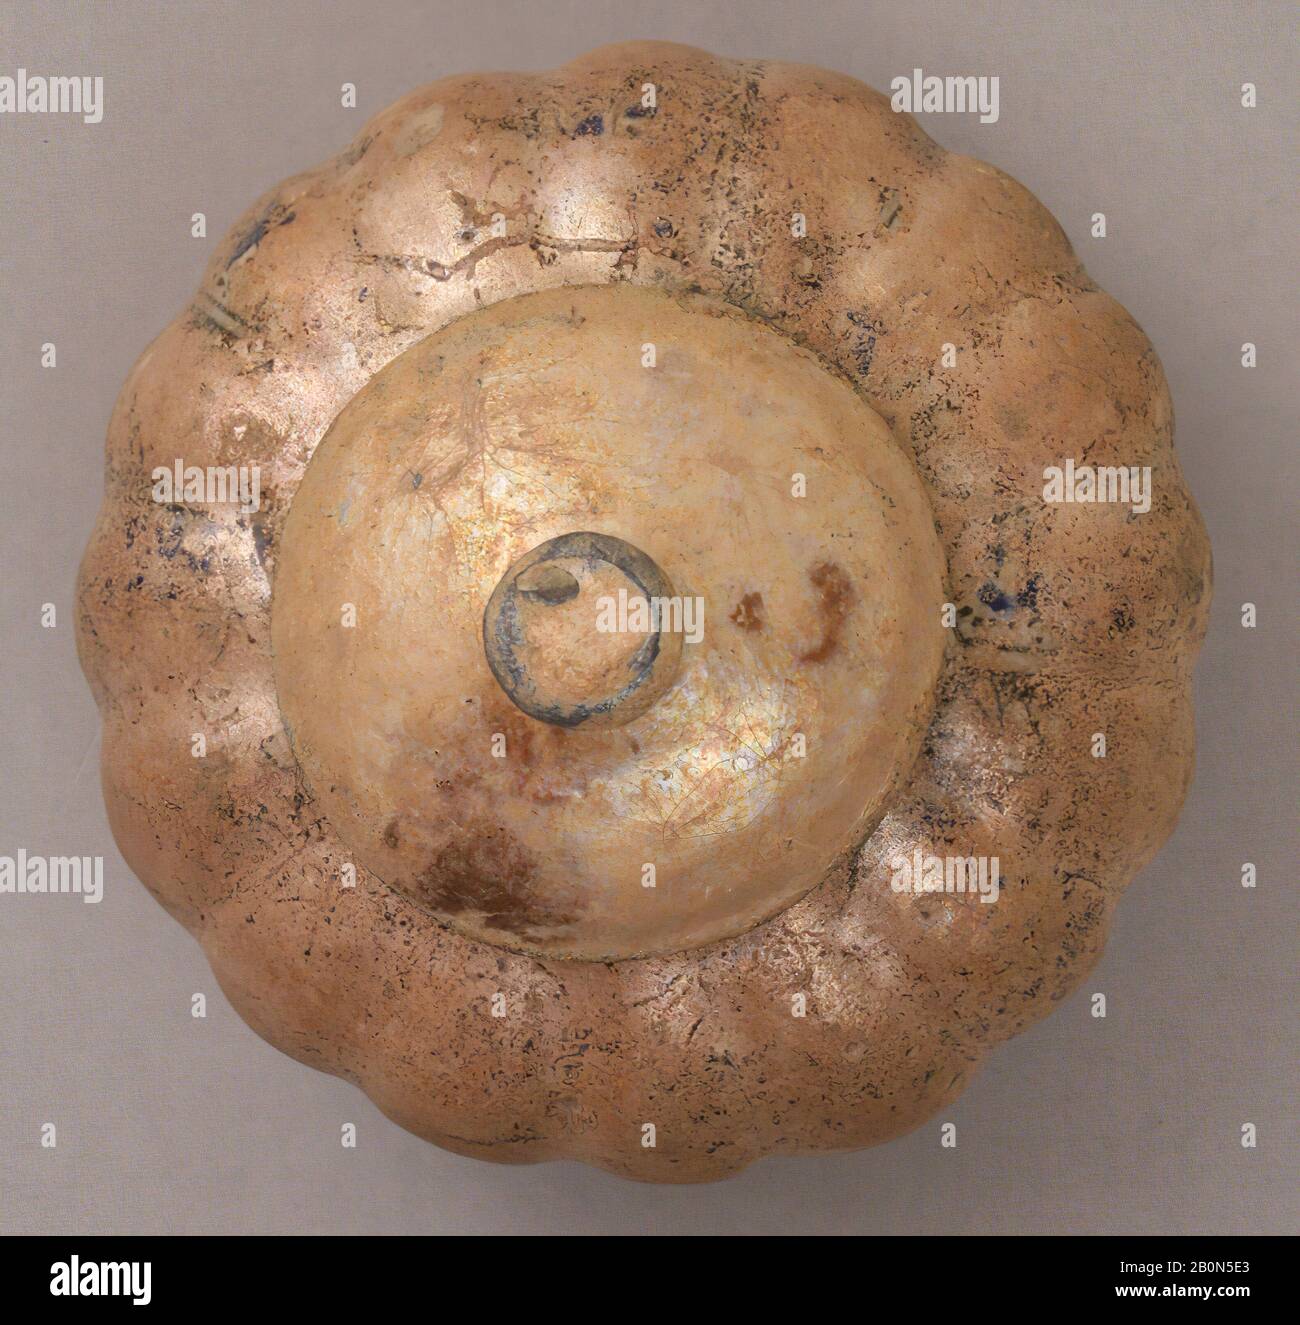 Vaso, 14th secolo, Attribuito all'Iran, Earthenware; glassato, a+b: H. 6 1/4 in. (15,9 cm), diam. 7 3/8 in. (18,7 cm), Peso 29,4 oz. (833,6 g), a: H. 4 1/8 in. (10,5 cm), diam. 7 3/8 in. (18,7 cm), Peso 23,9 once (677,6 g), b: H. 2 7/16 in. (6,2 cm), diam. 4 1/8 in. (10,5 cm), Peso 5,5 once (155.9), Ceramica Foto Stock